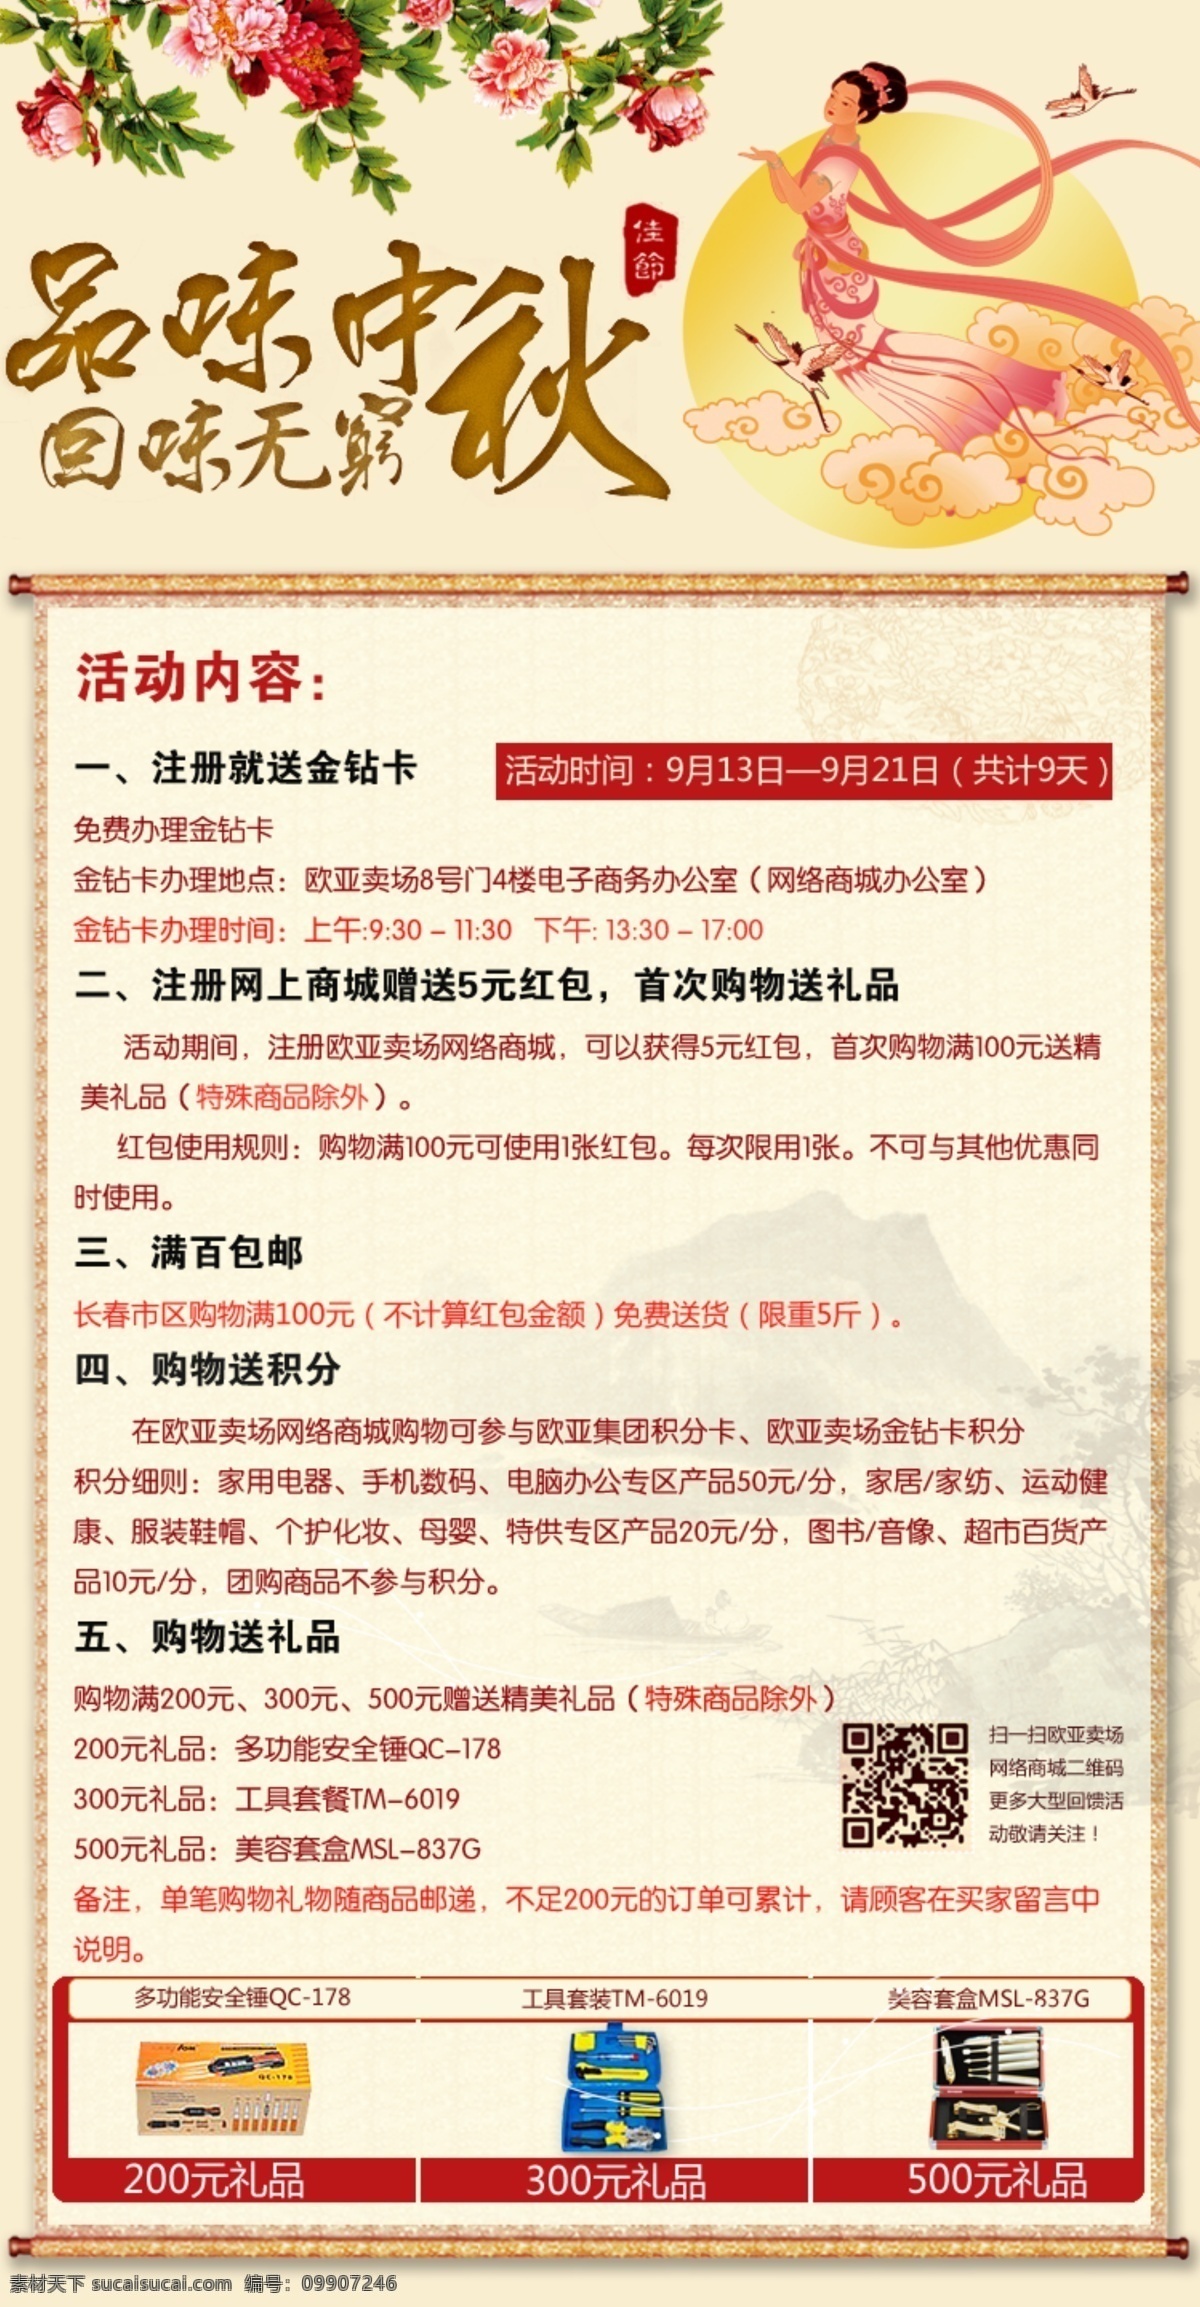 活动 商城 说明 网页模板 源文件 中秋节 中文模板 模板下载 海报 其他海报设计